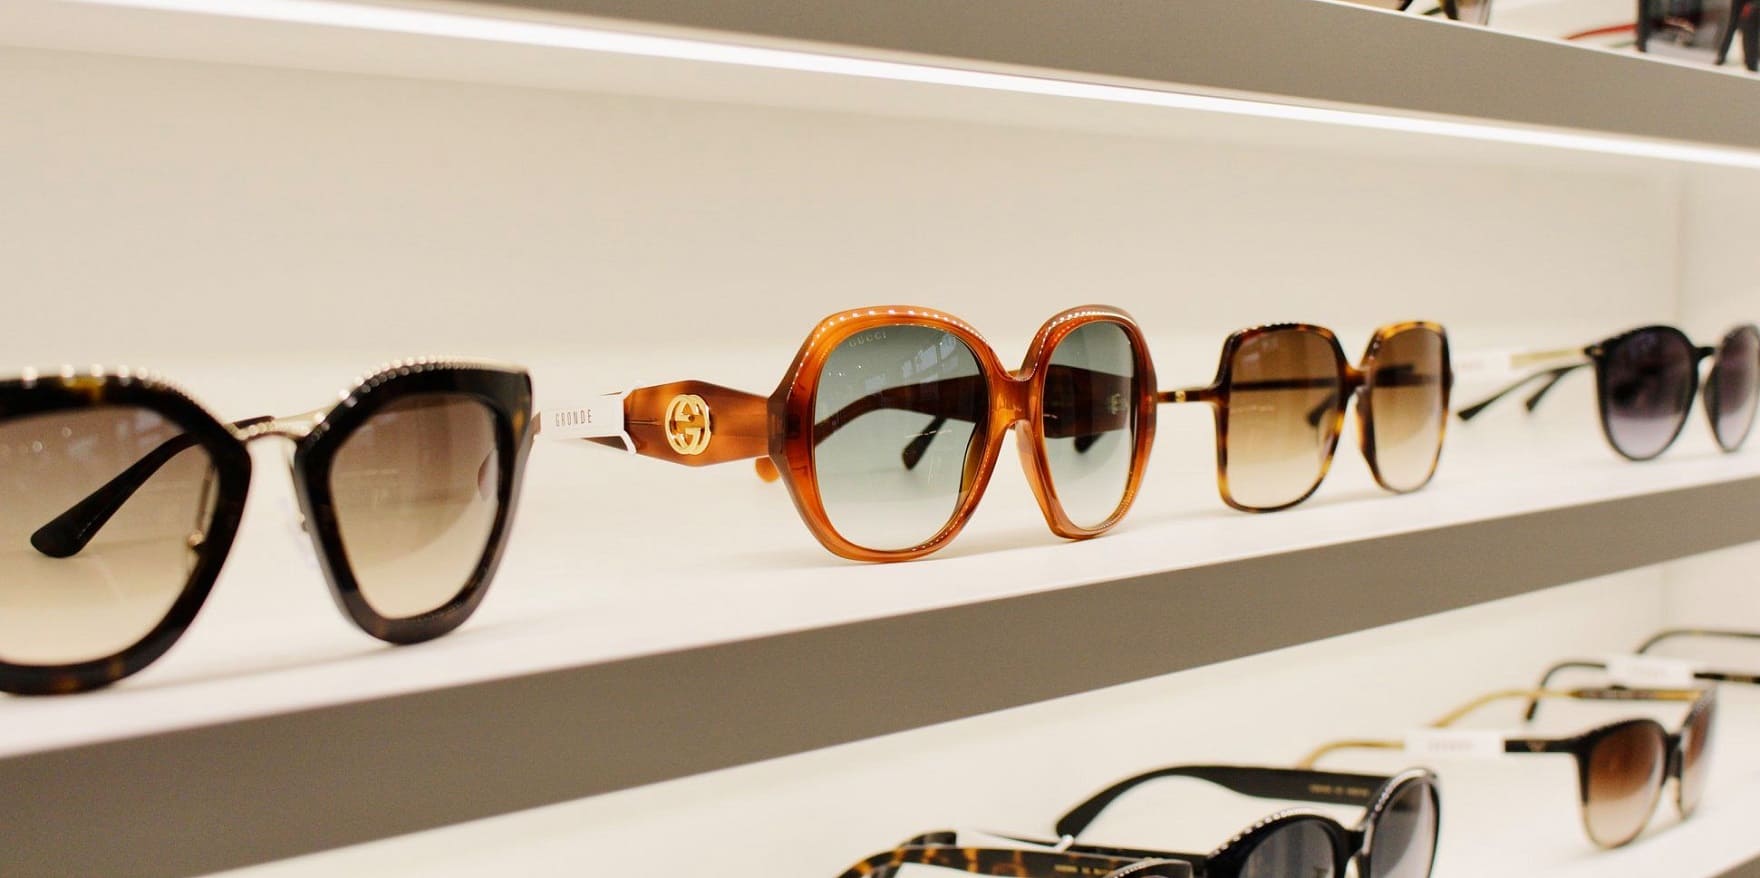 Sonnenbrillen beim Optiker kaufen? Der Blog von Optiker Gronde erklärt warum das besser ist